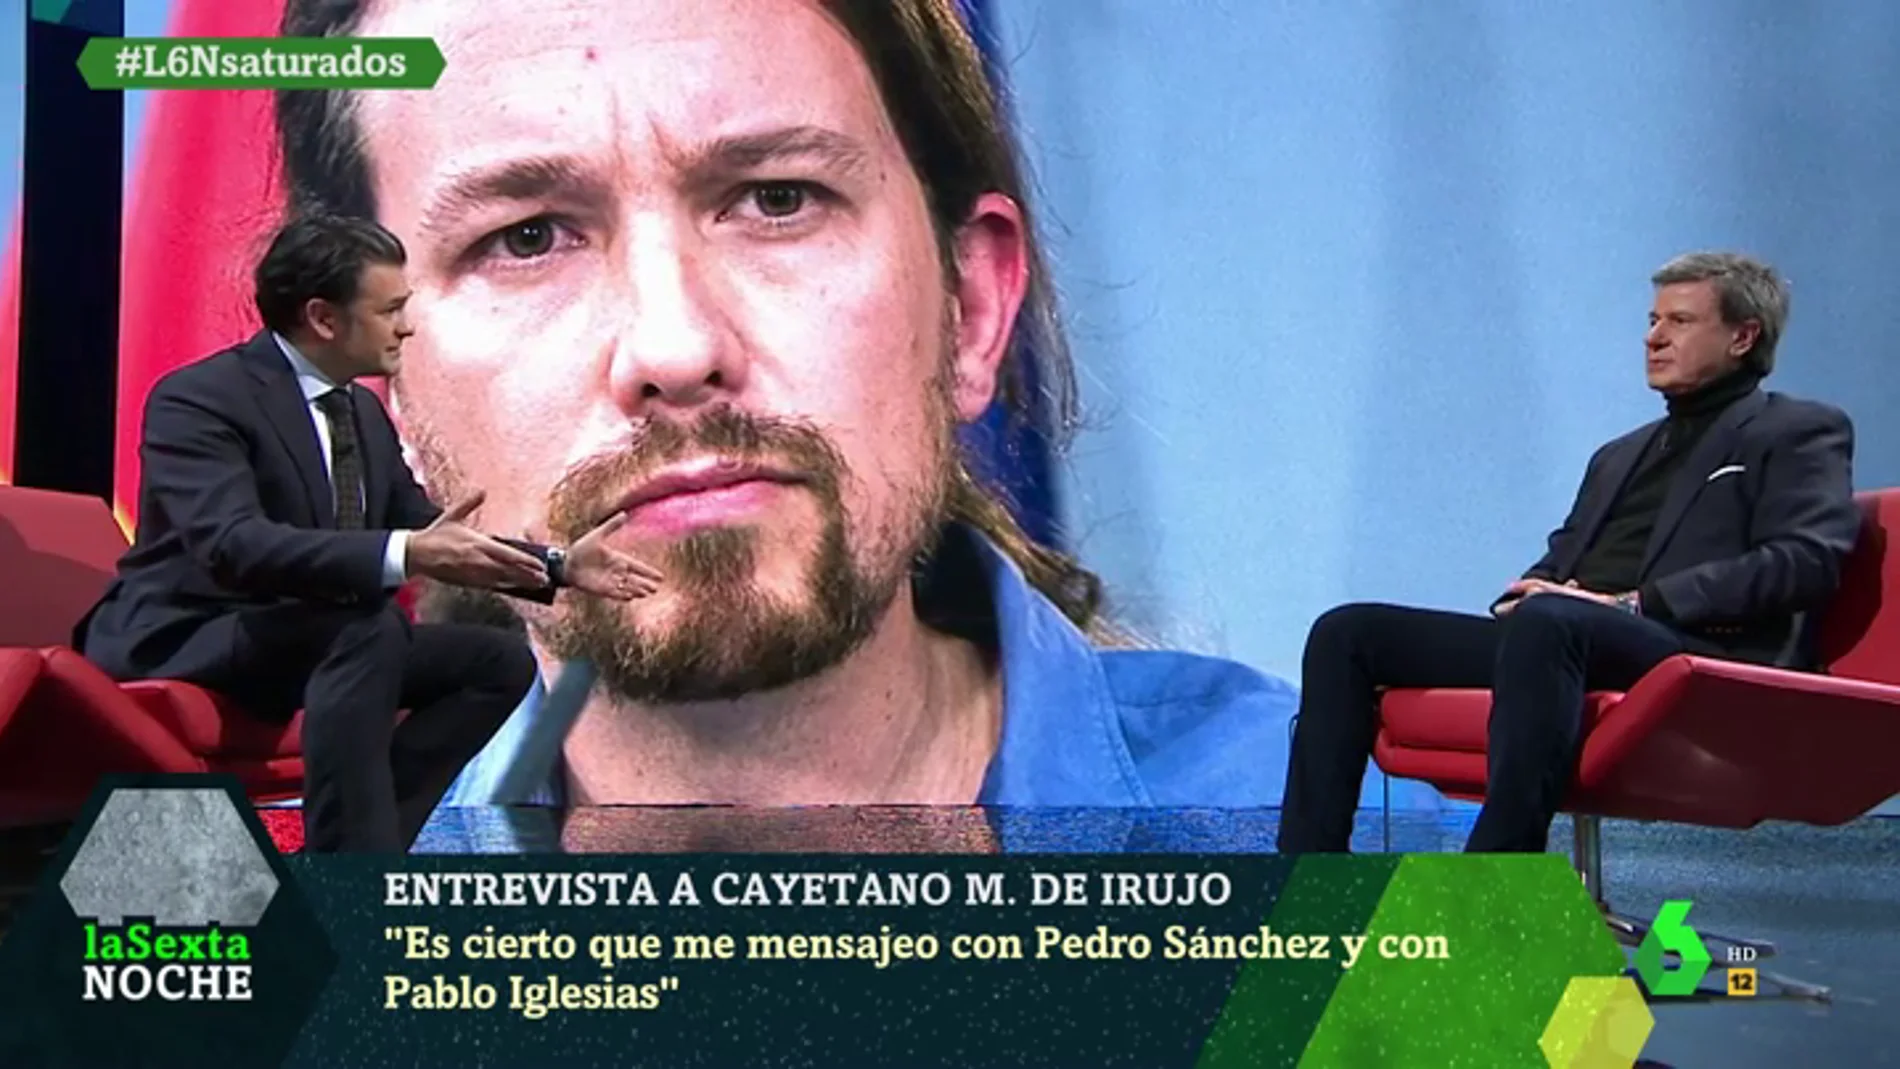 Martínez de Irujo confiesa que se manda mensajes con Sánchez e Iglesias: "Tengo confianza en el presidente"